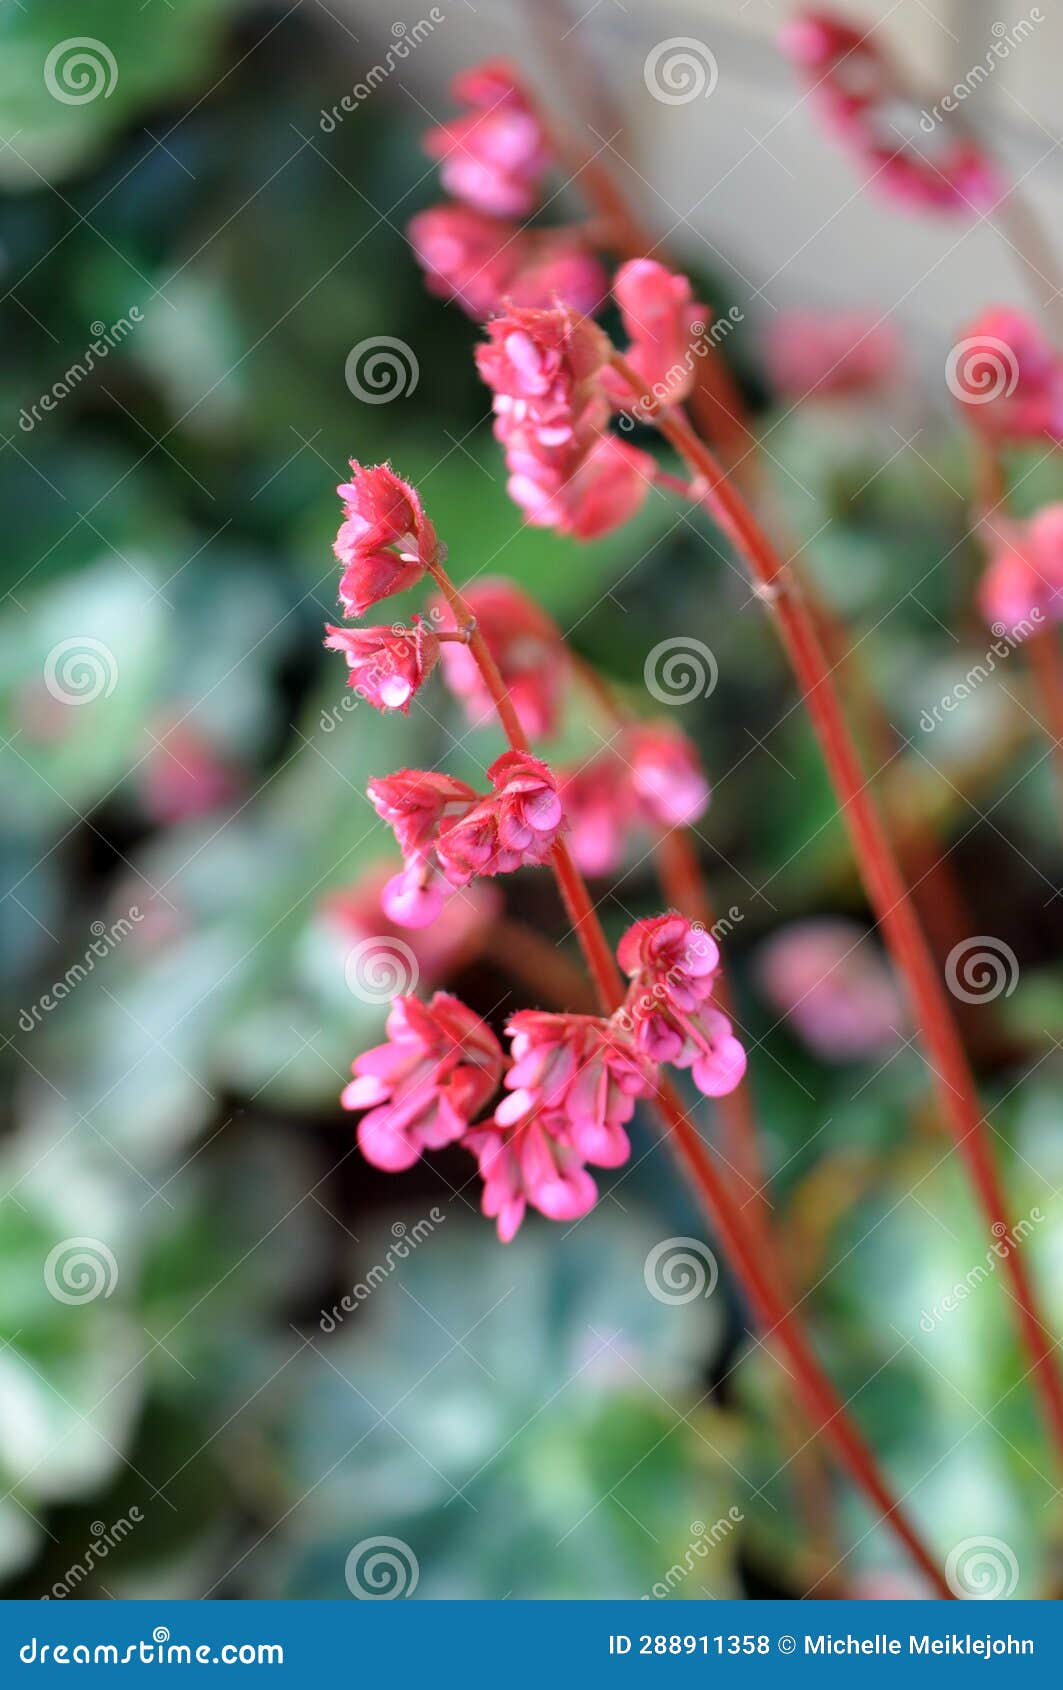 pink heartleaf bergenia flowers